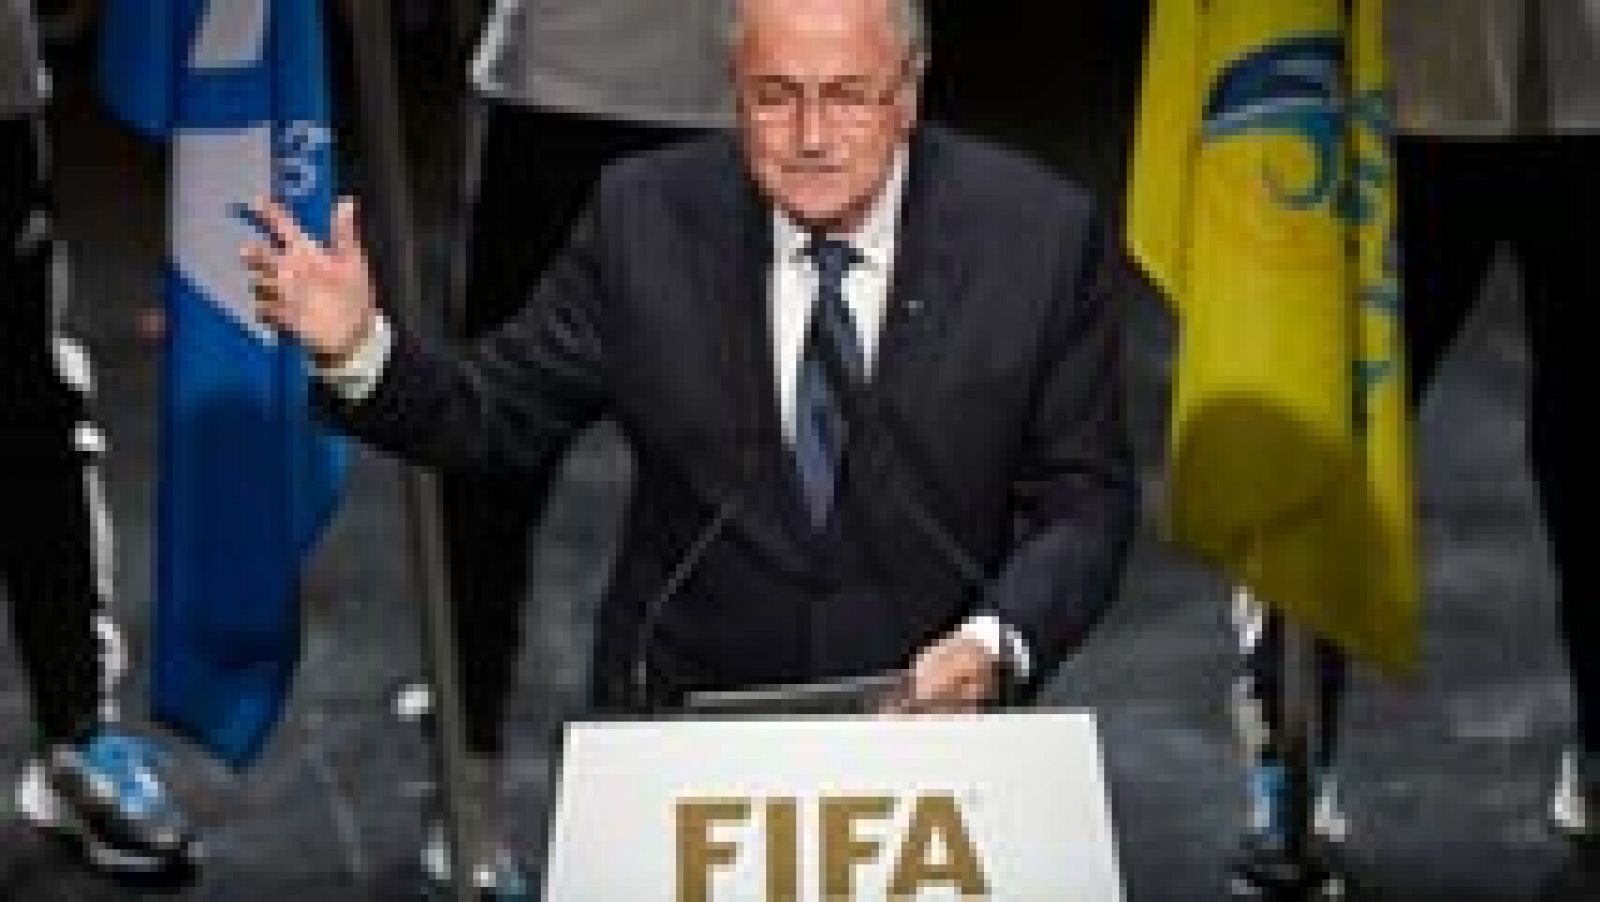 El presidente de la FIFA, Joseph Blatter, aseguró que "no hay sitio para la corrupción de ningún tipo" en la organización que dirige desde 1998, y que "es necesario empezar a restaurar la confianza" durante la inauguración en Zúrich del 65º Congreso en el que este viernes se celebrarán elecciones presidenciales.